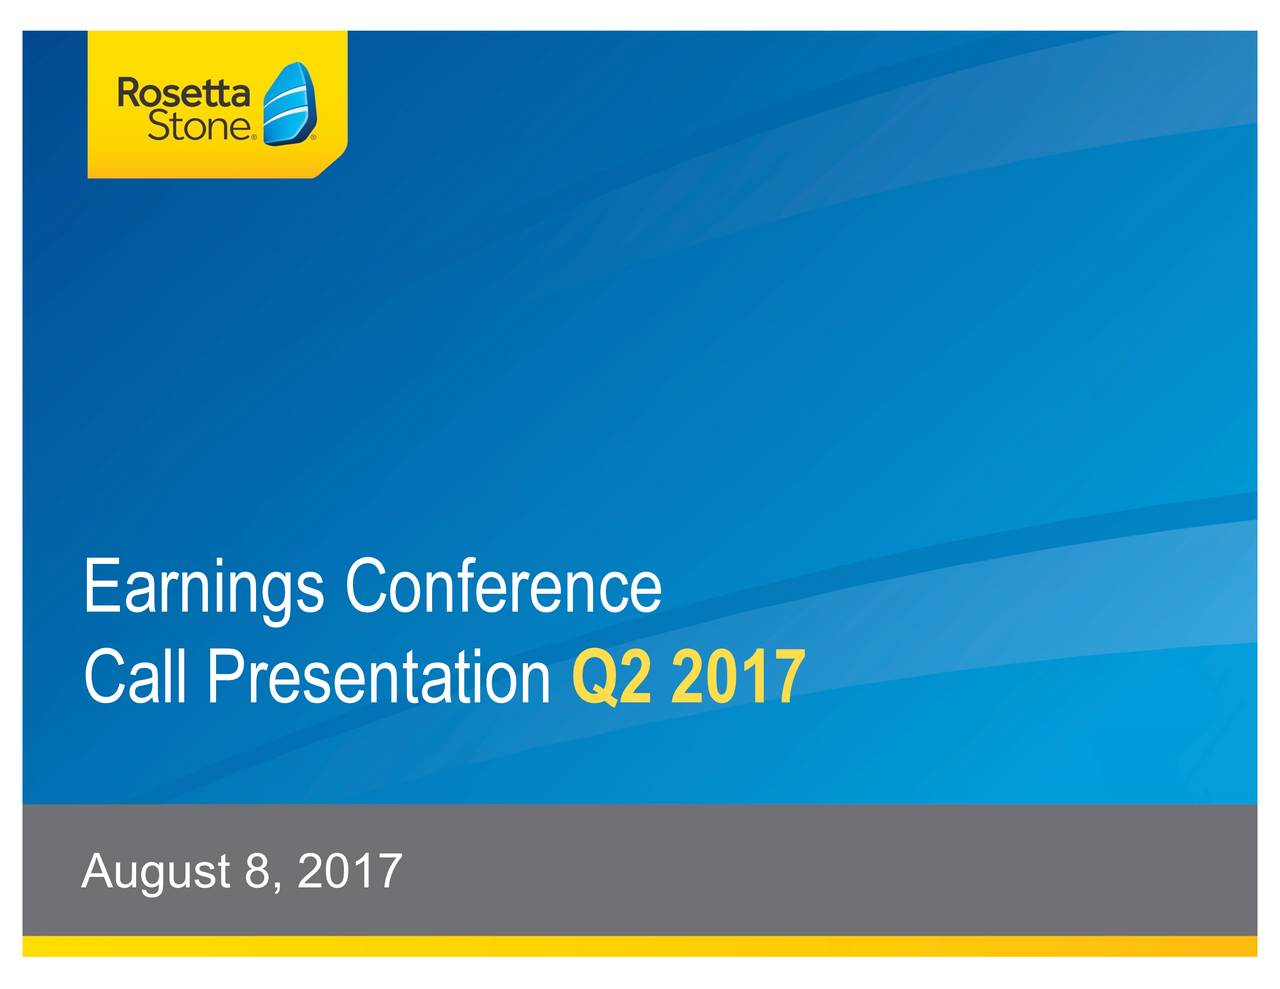 Call Presentation Q2 2017 August 8, 2017